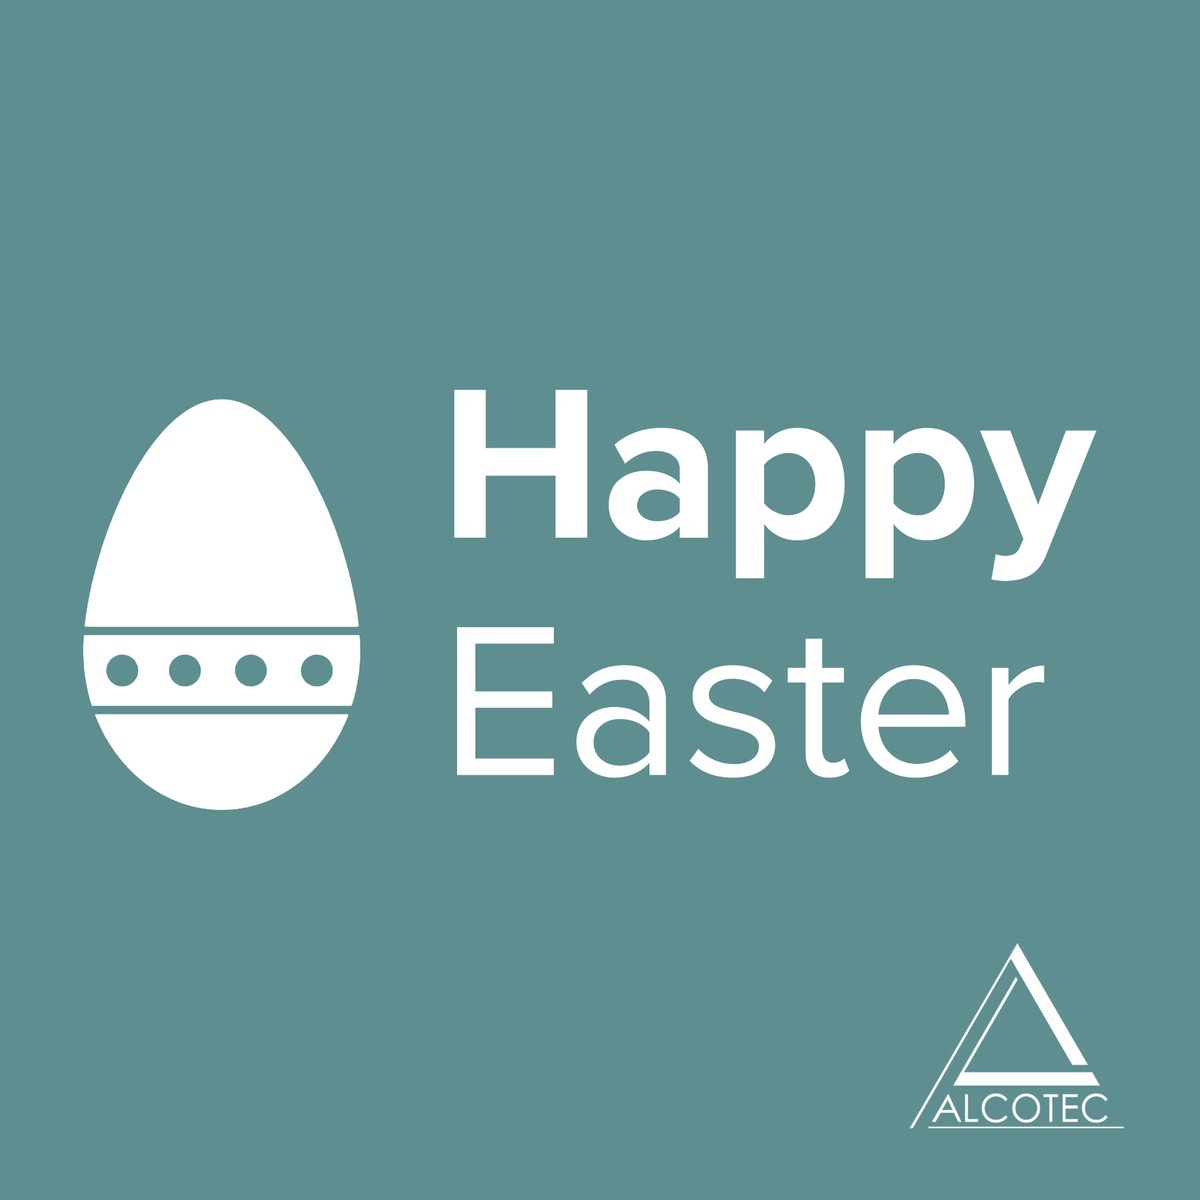 I migliori auguri di una serena Pasqua dal team di Alcotec.

#Alcotec #Pasqua2022 #team #squadravincente #costruiamofuturo